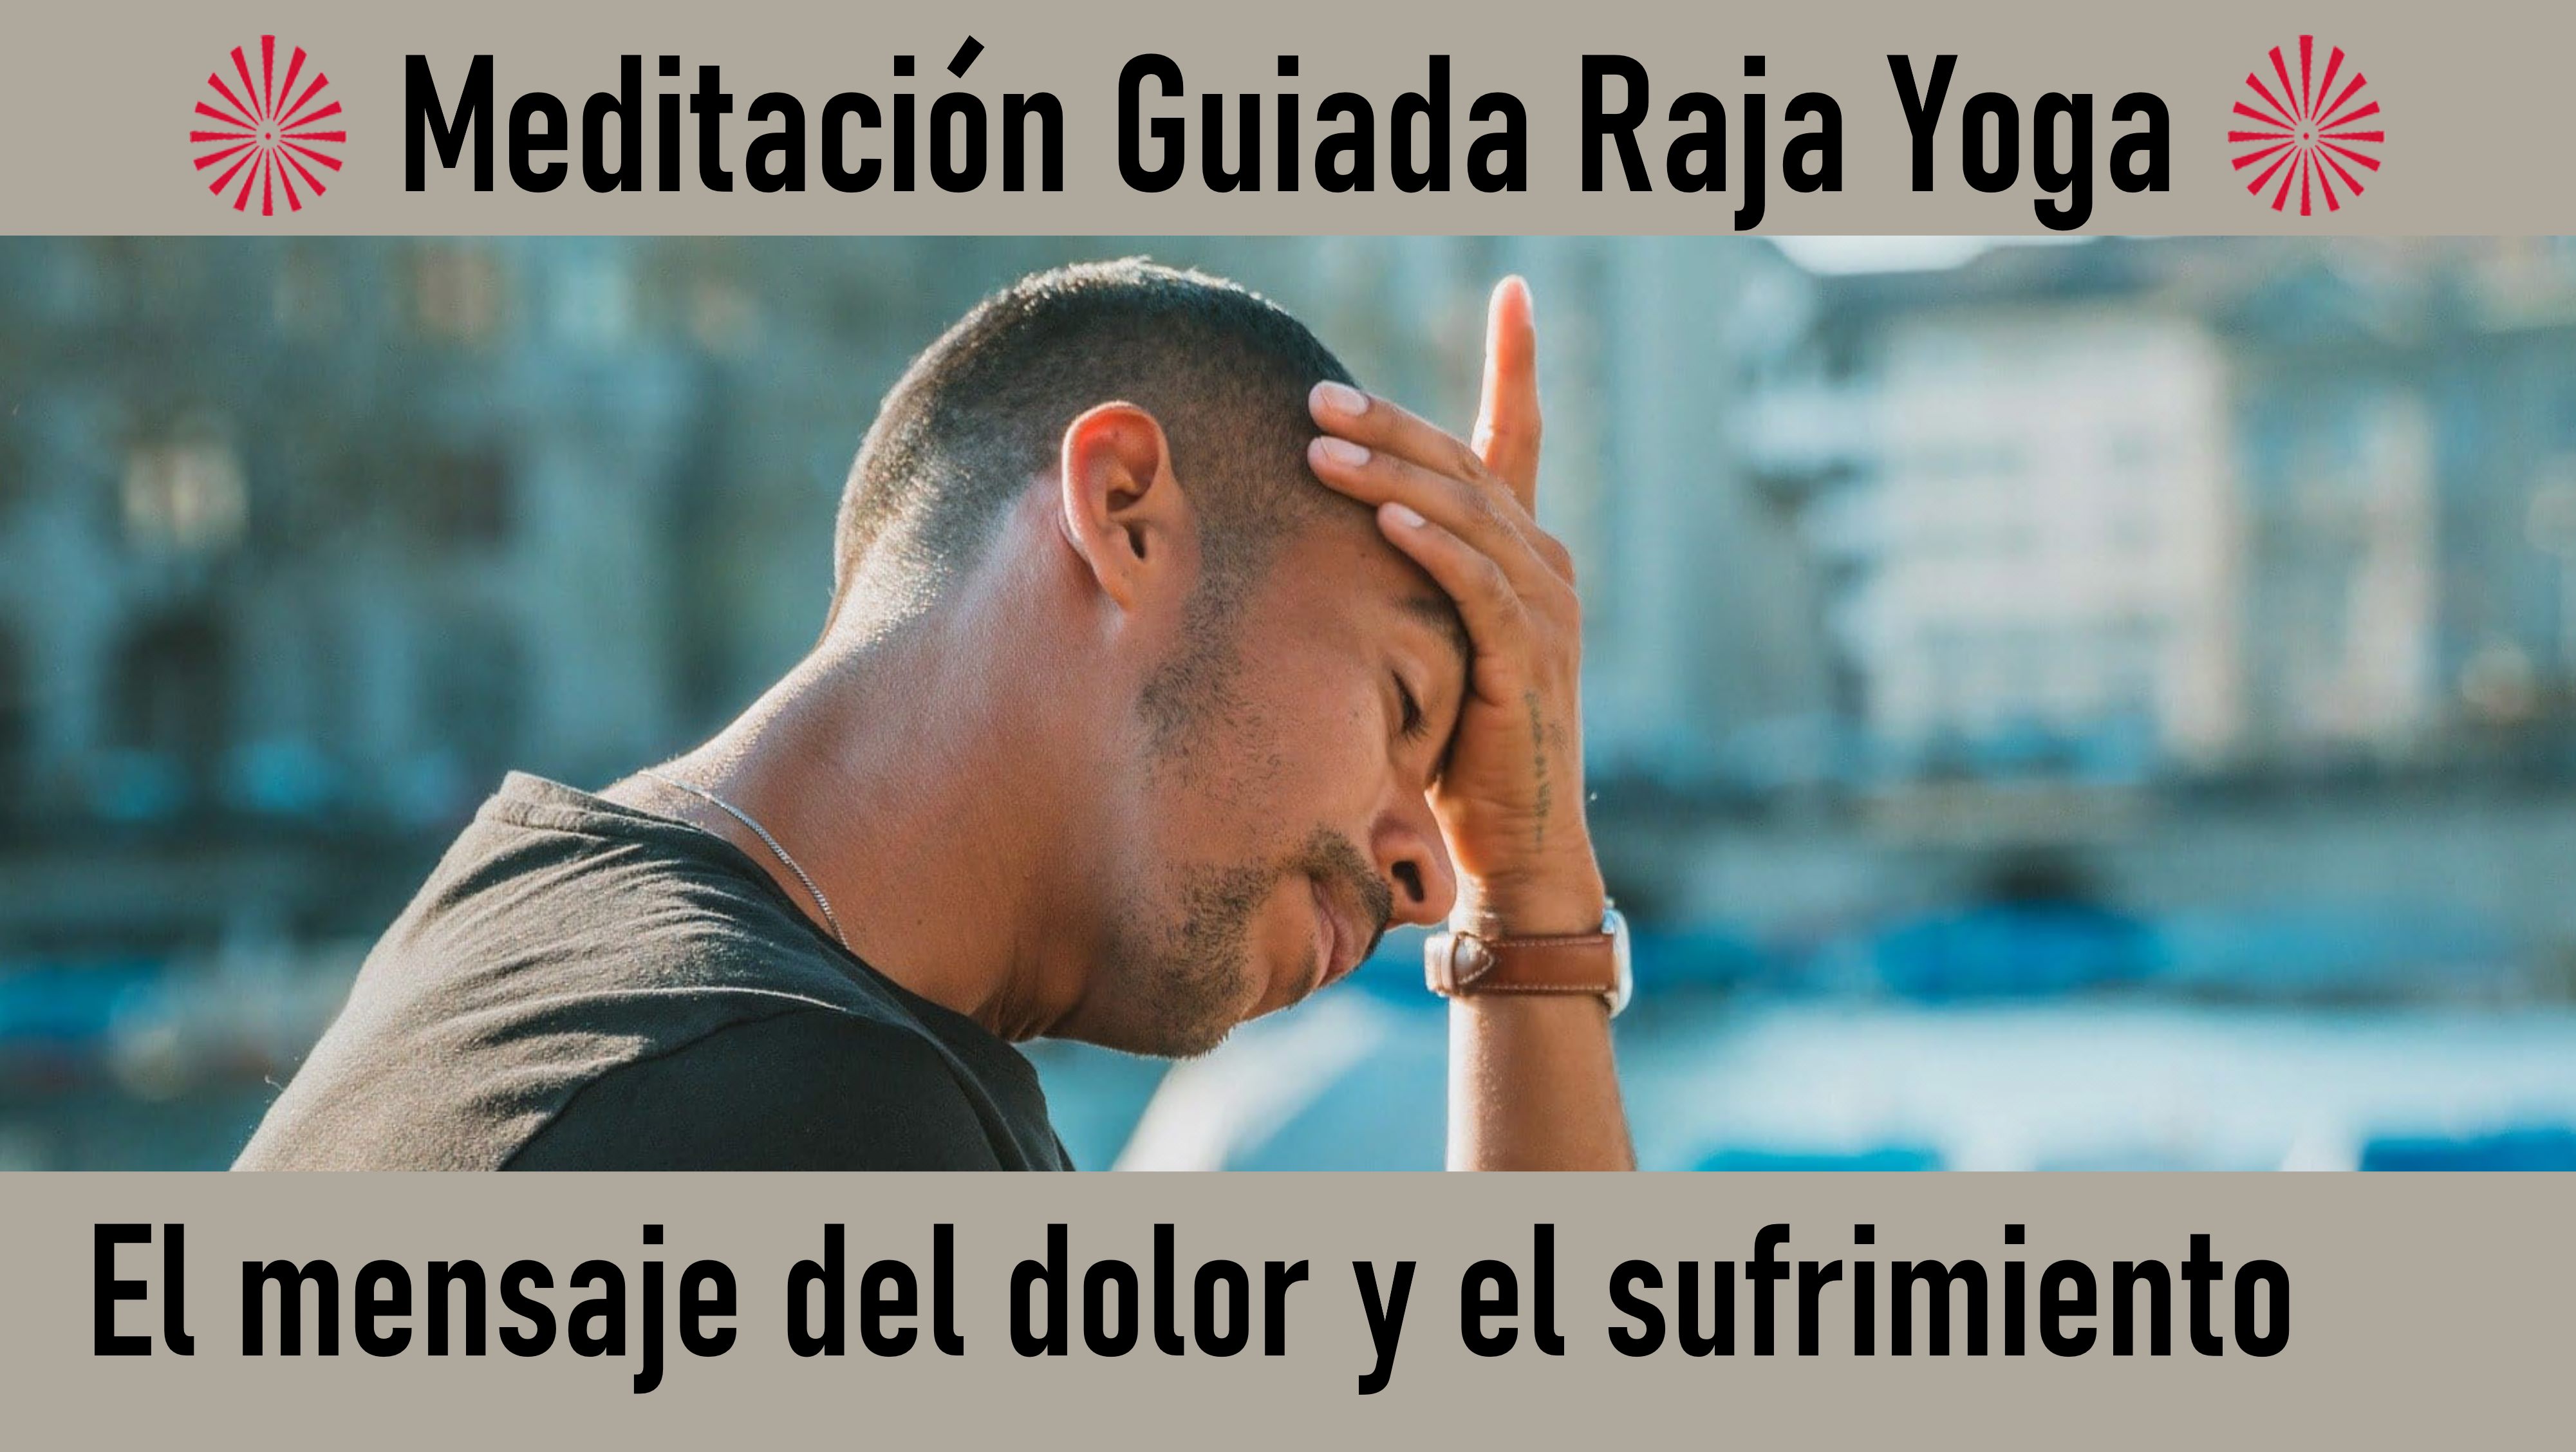 Meditación Raja Yoga: El mensaje del dolor y el sufrimiento (9 Julio 2020) On-line desde Mallorca